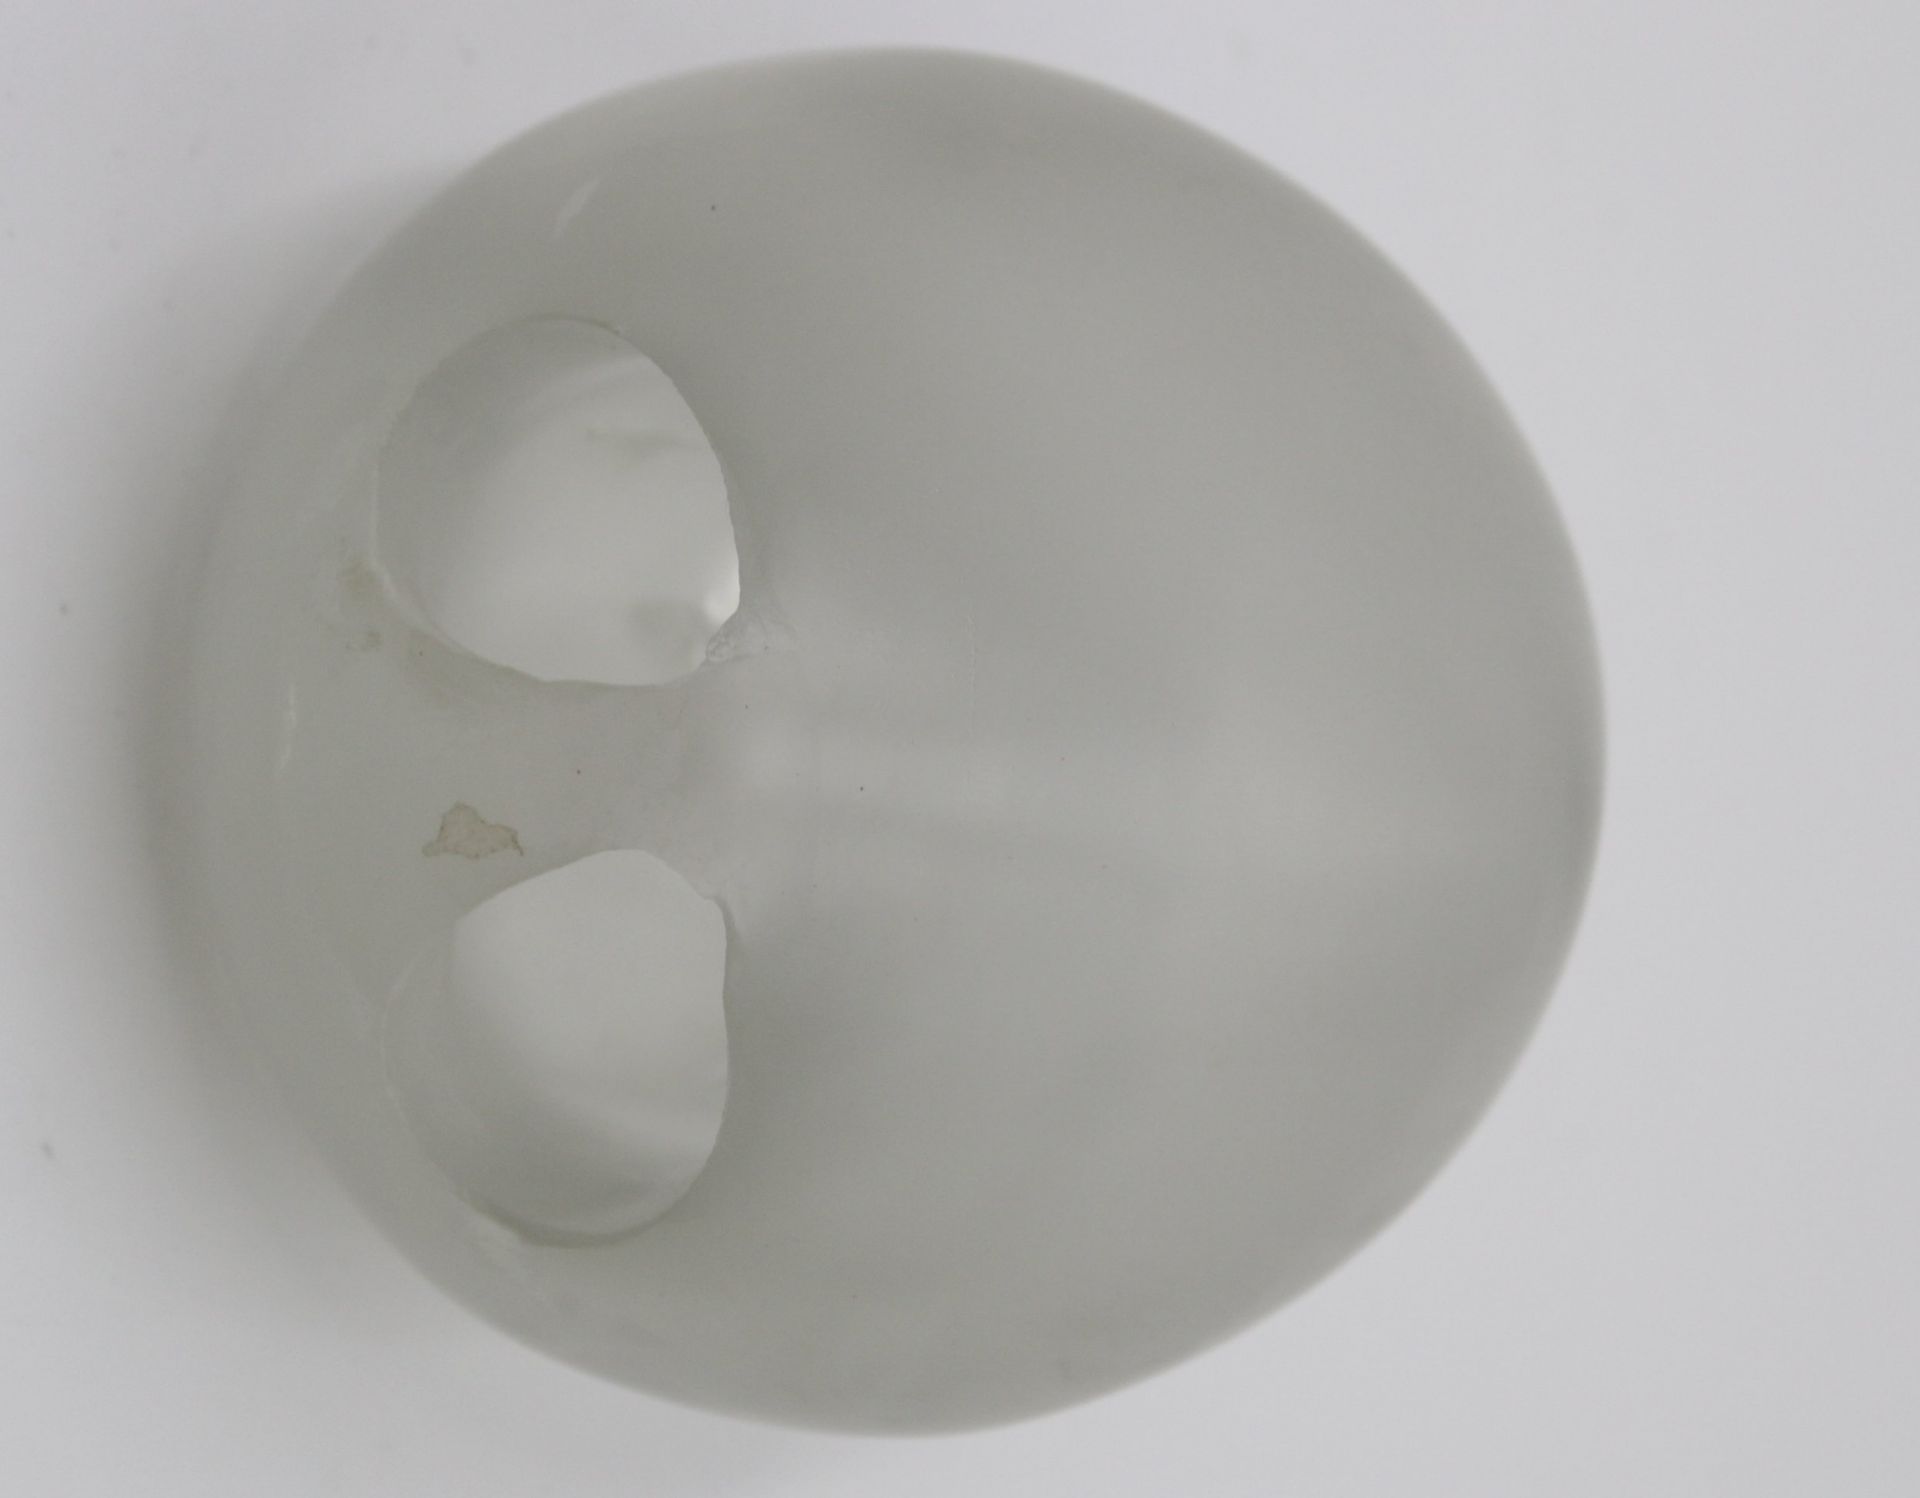 kugelförmige Plastik , Schutz des ungeborenen Lebens, signiert Kristian Klepsch, farbloses Glas, fo - Bild 3 aus 3